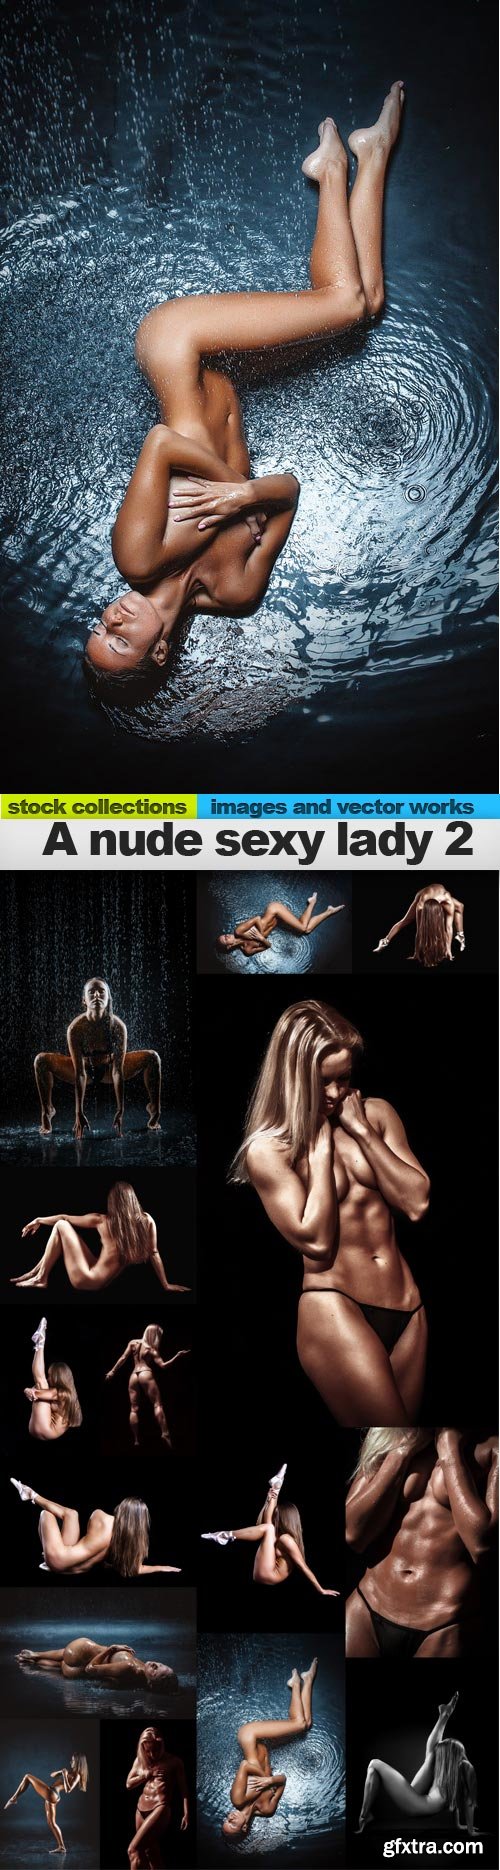 A nude sexy lady 2, 15 x UHQ JPEG